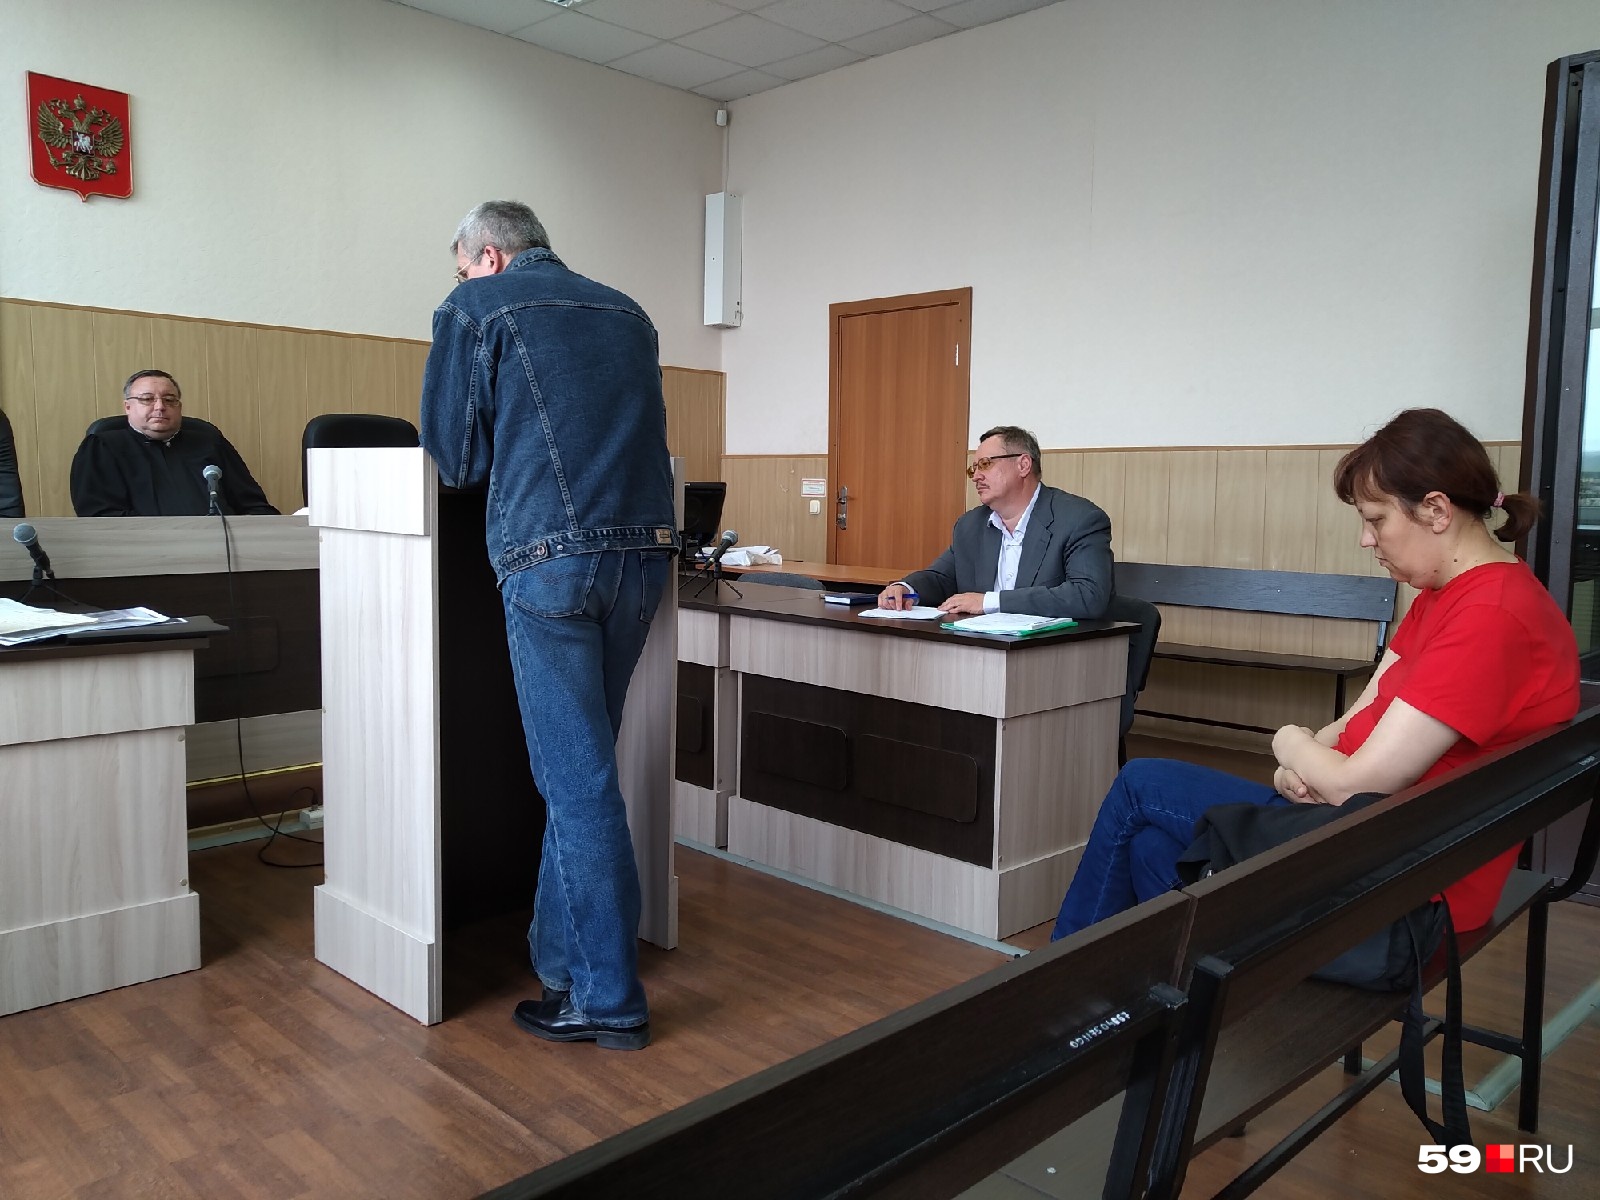 Заместитель директора школы по АХЧ считает, что Галкина нарушила положение о пропускном режиме 